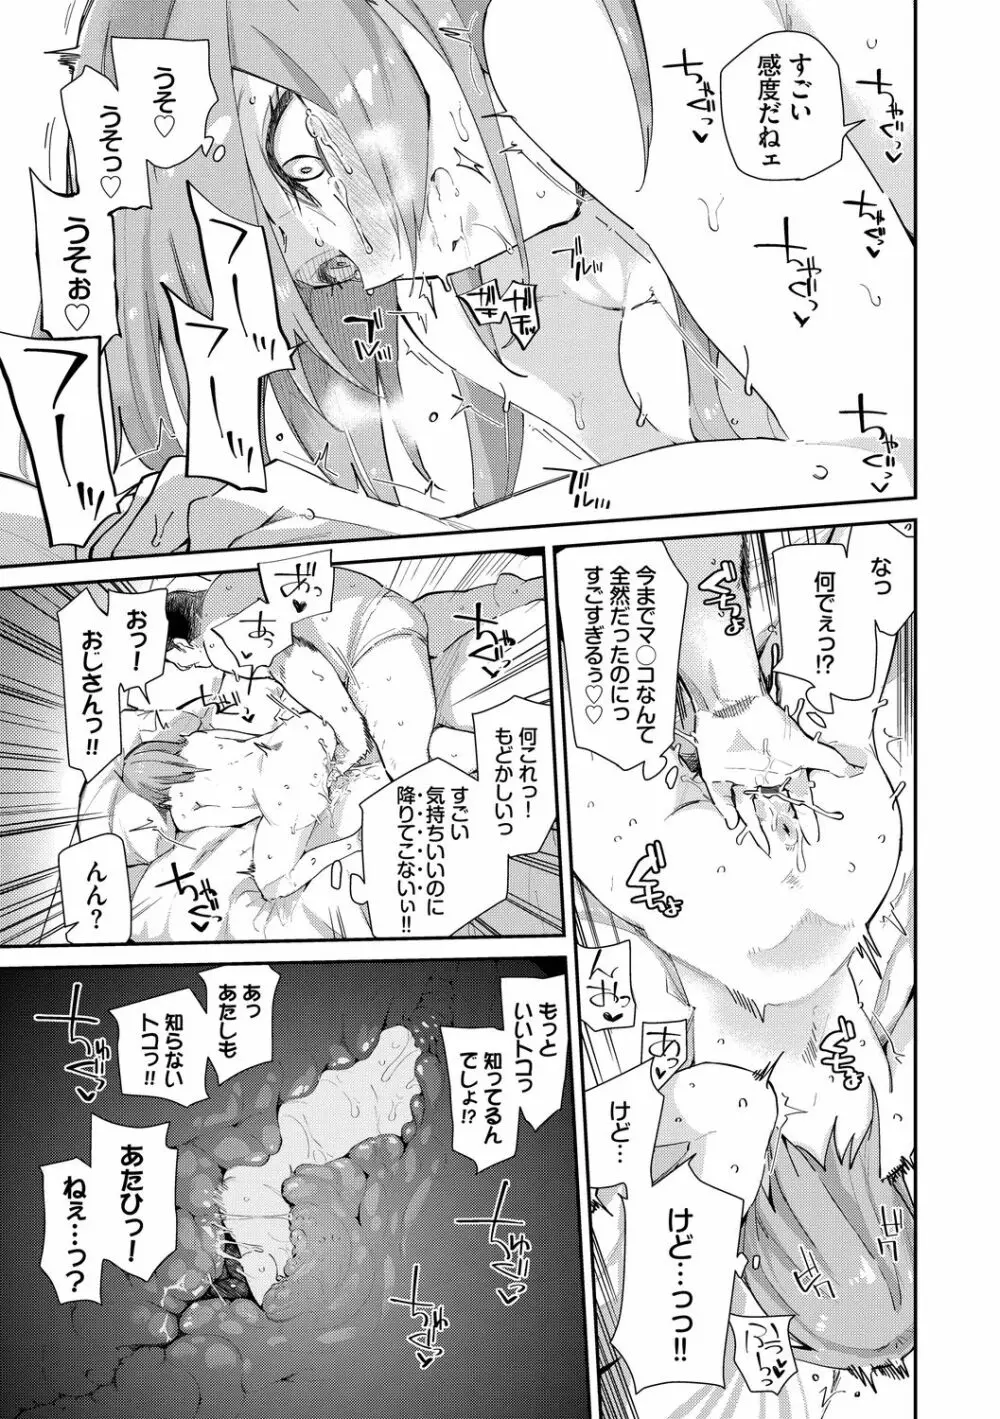 SEX中毒ッ!マジヤバ超絶ビッチ! Vol.8 13ページ